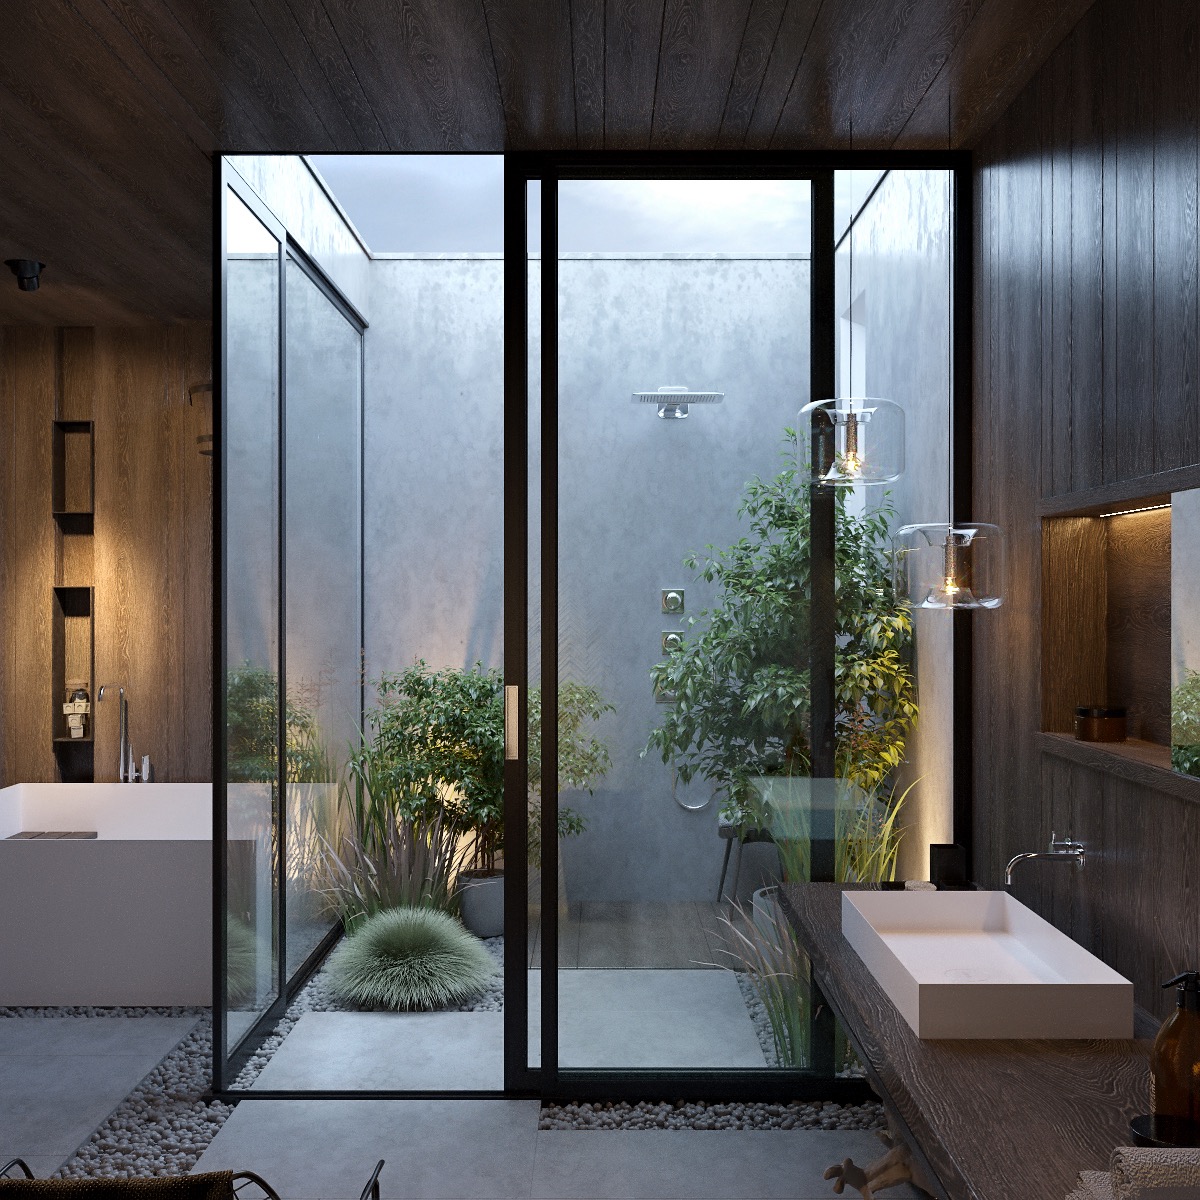 Phòng tắm vòi sen phong cách lộ thiên hiện rất được ưa chuộng. Tường bê tông xám mịn làm nền cho các loại cây xanh thêm phần nổi bật.